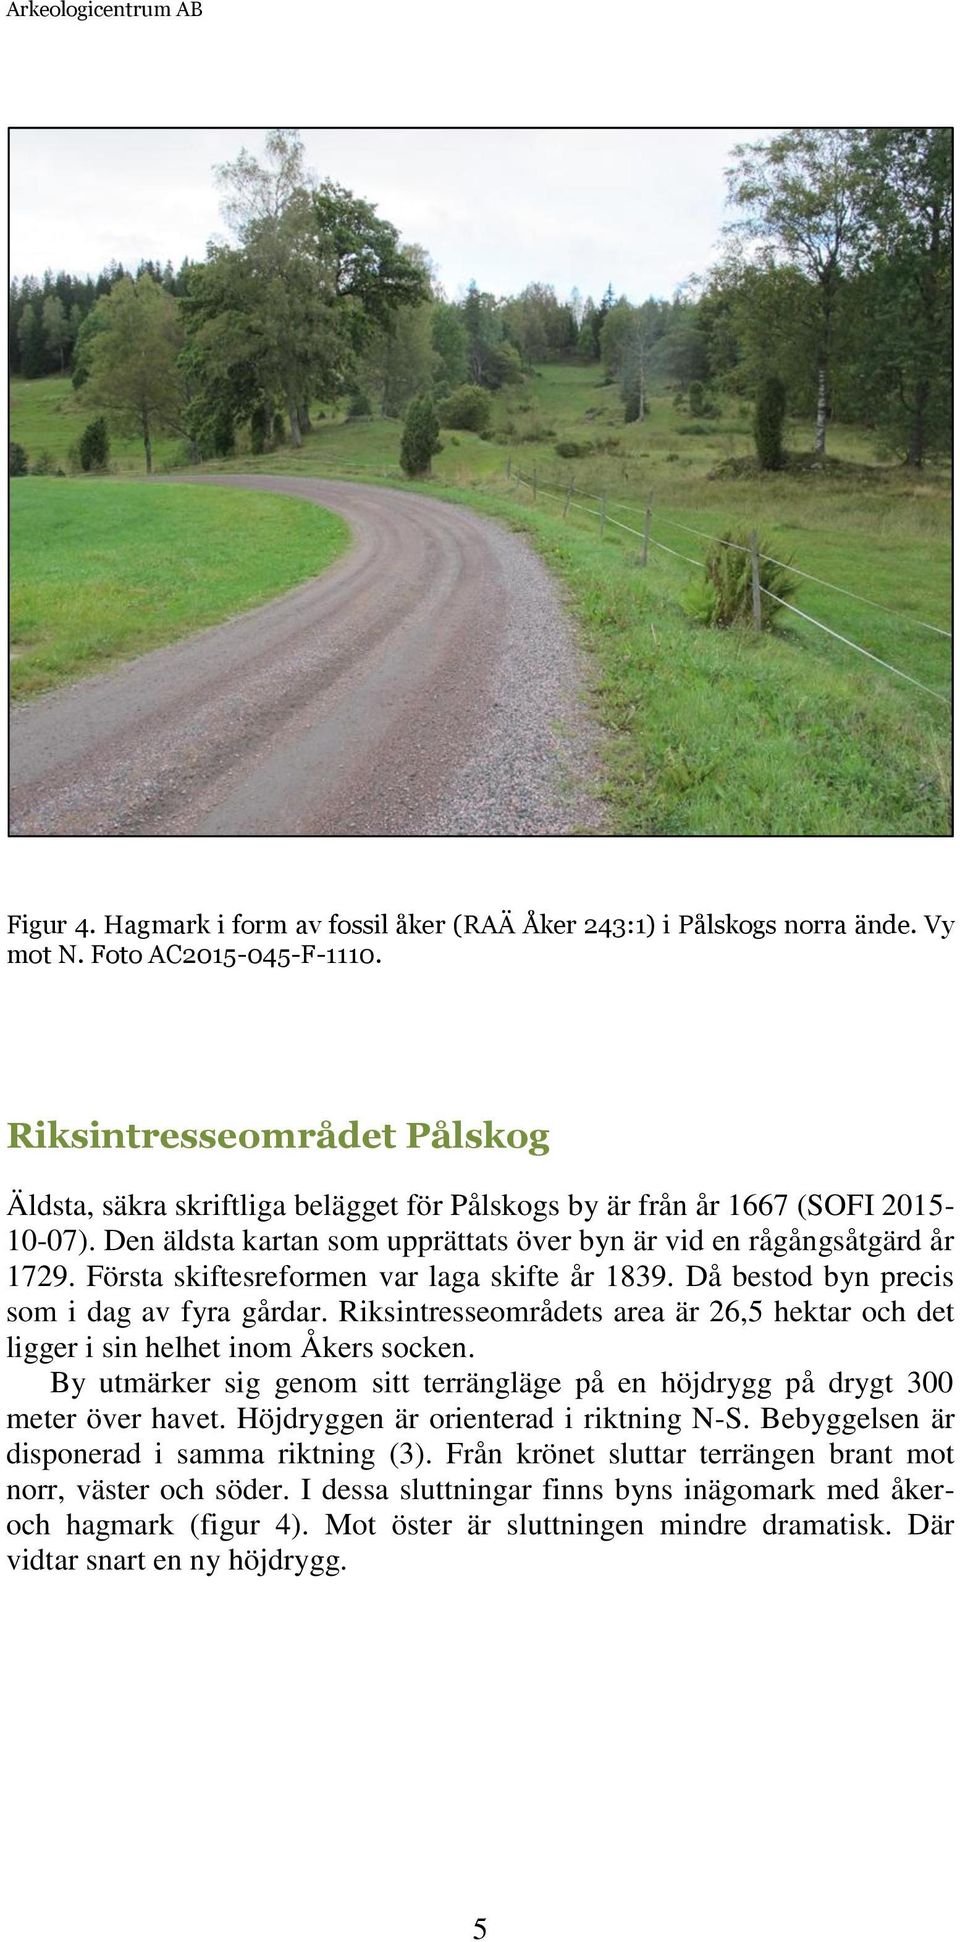 Första skiftesreformen var laga skifte år 1839. Då bestod byn precis som i dag av fyra gårdar. Riksintresseområdets area är 26,5 hektar och det ligger i sin helhet inom Åkers socken.